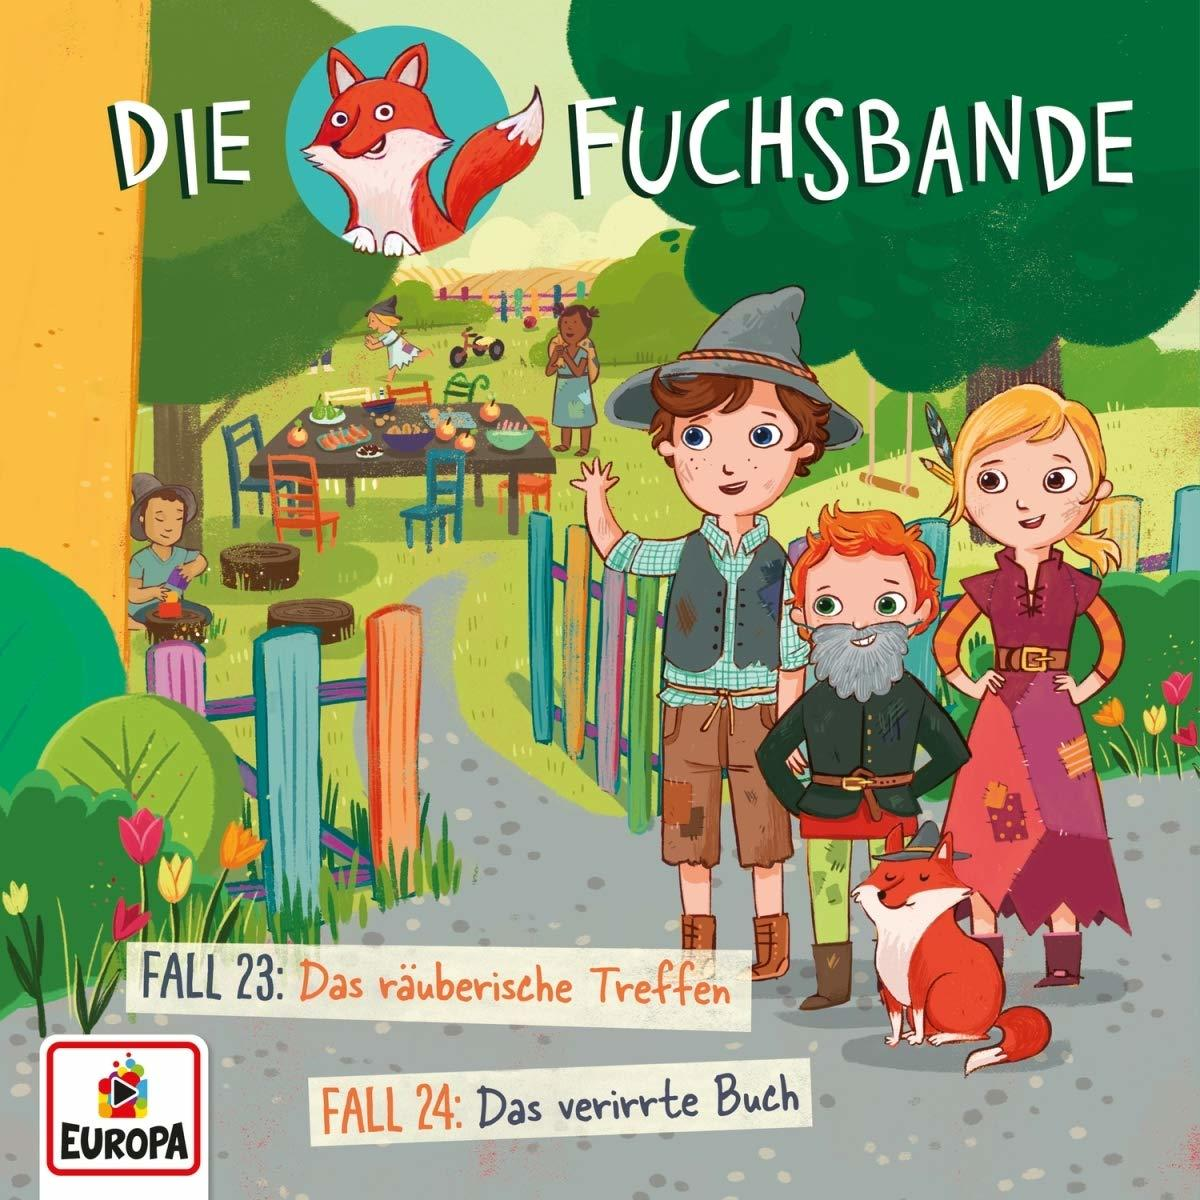 - Die (CD) 23: Das 012/Fall 24: Fuchsbande Da Treffen/Fall - räuberische